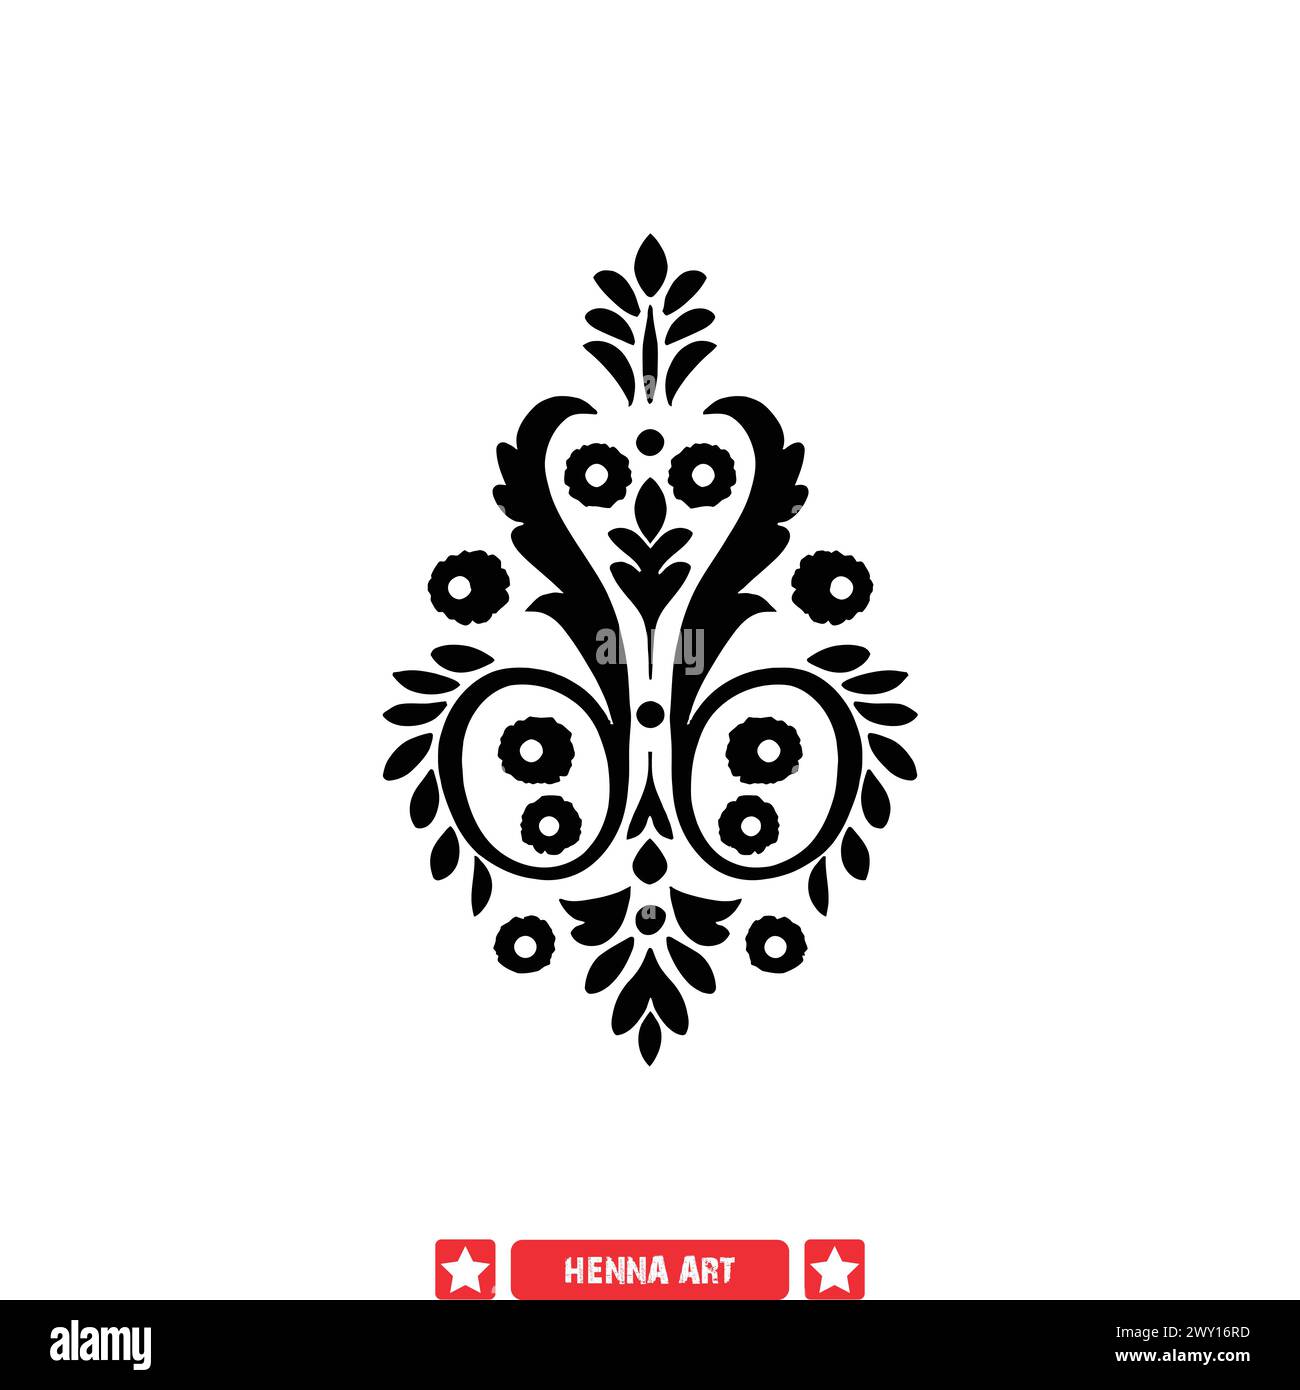 La silhouette di Henna Heritage culturale ha creato modelli onorati per le applicazioni moderne Illustrazione Vettoriale